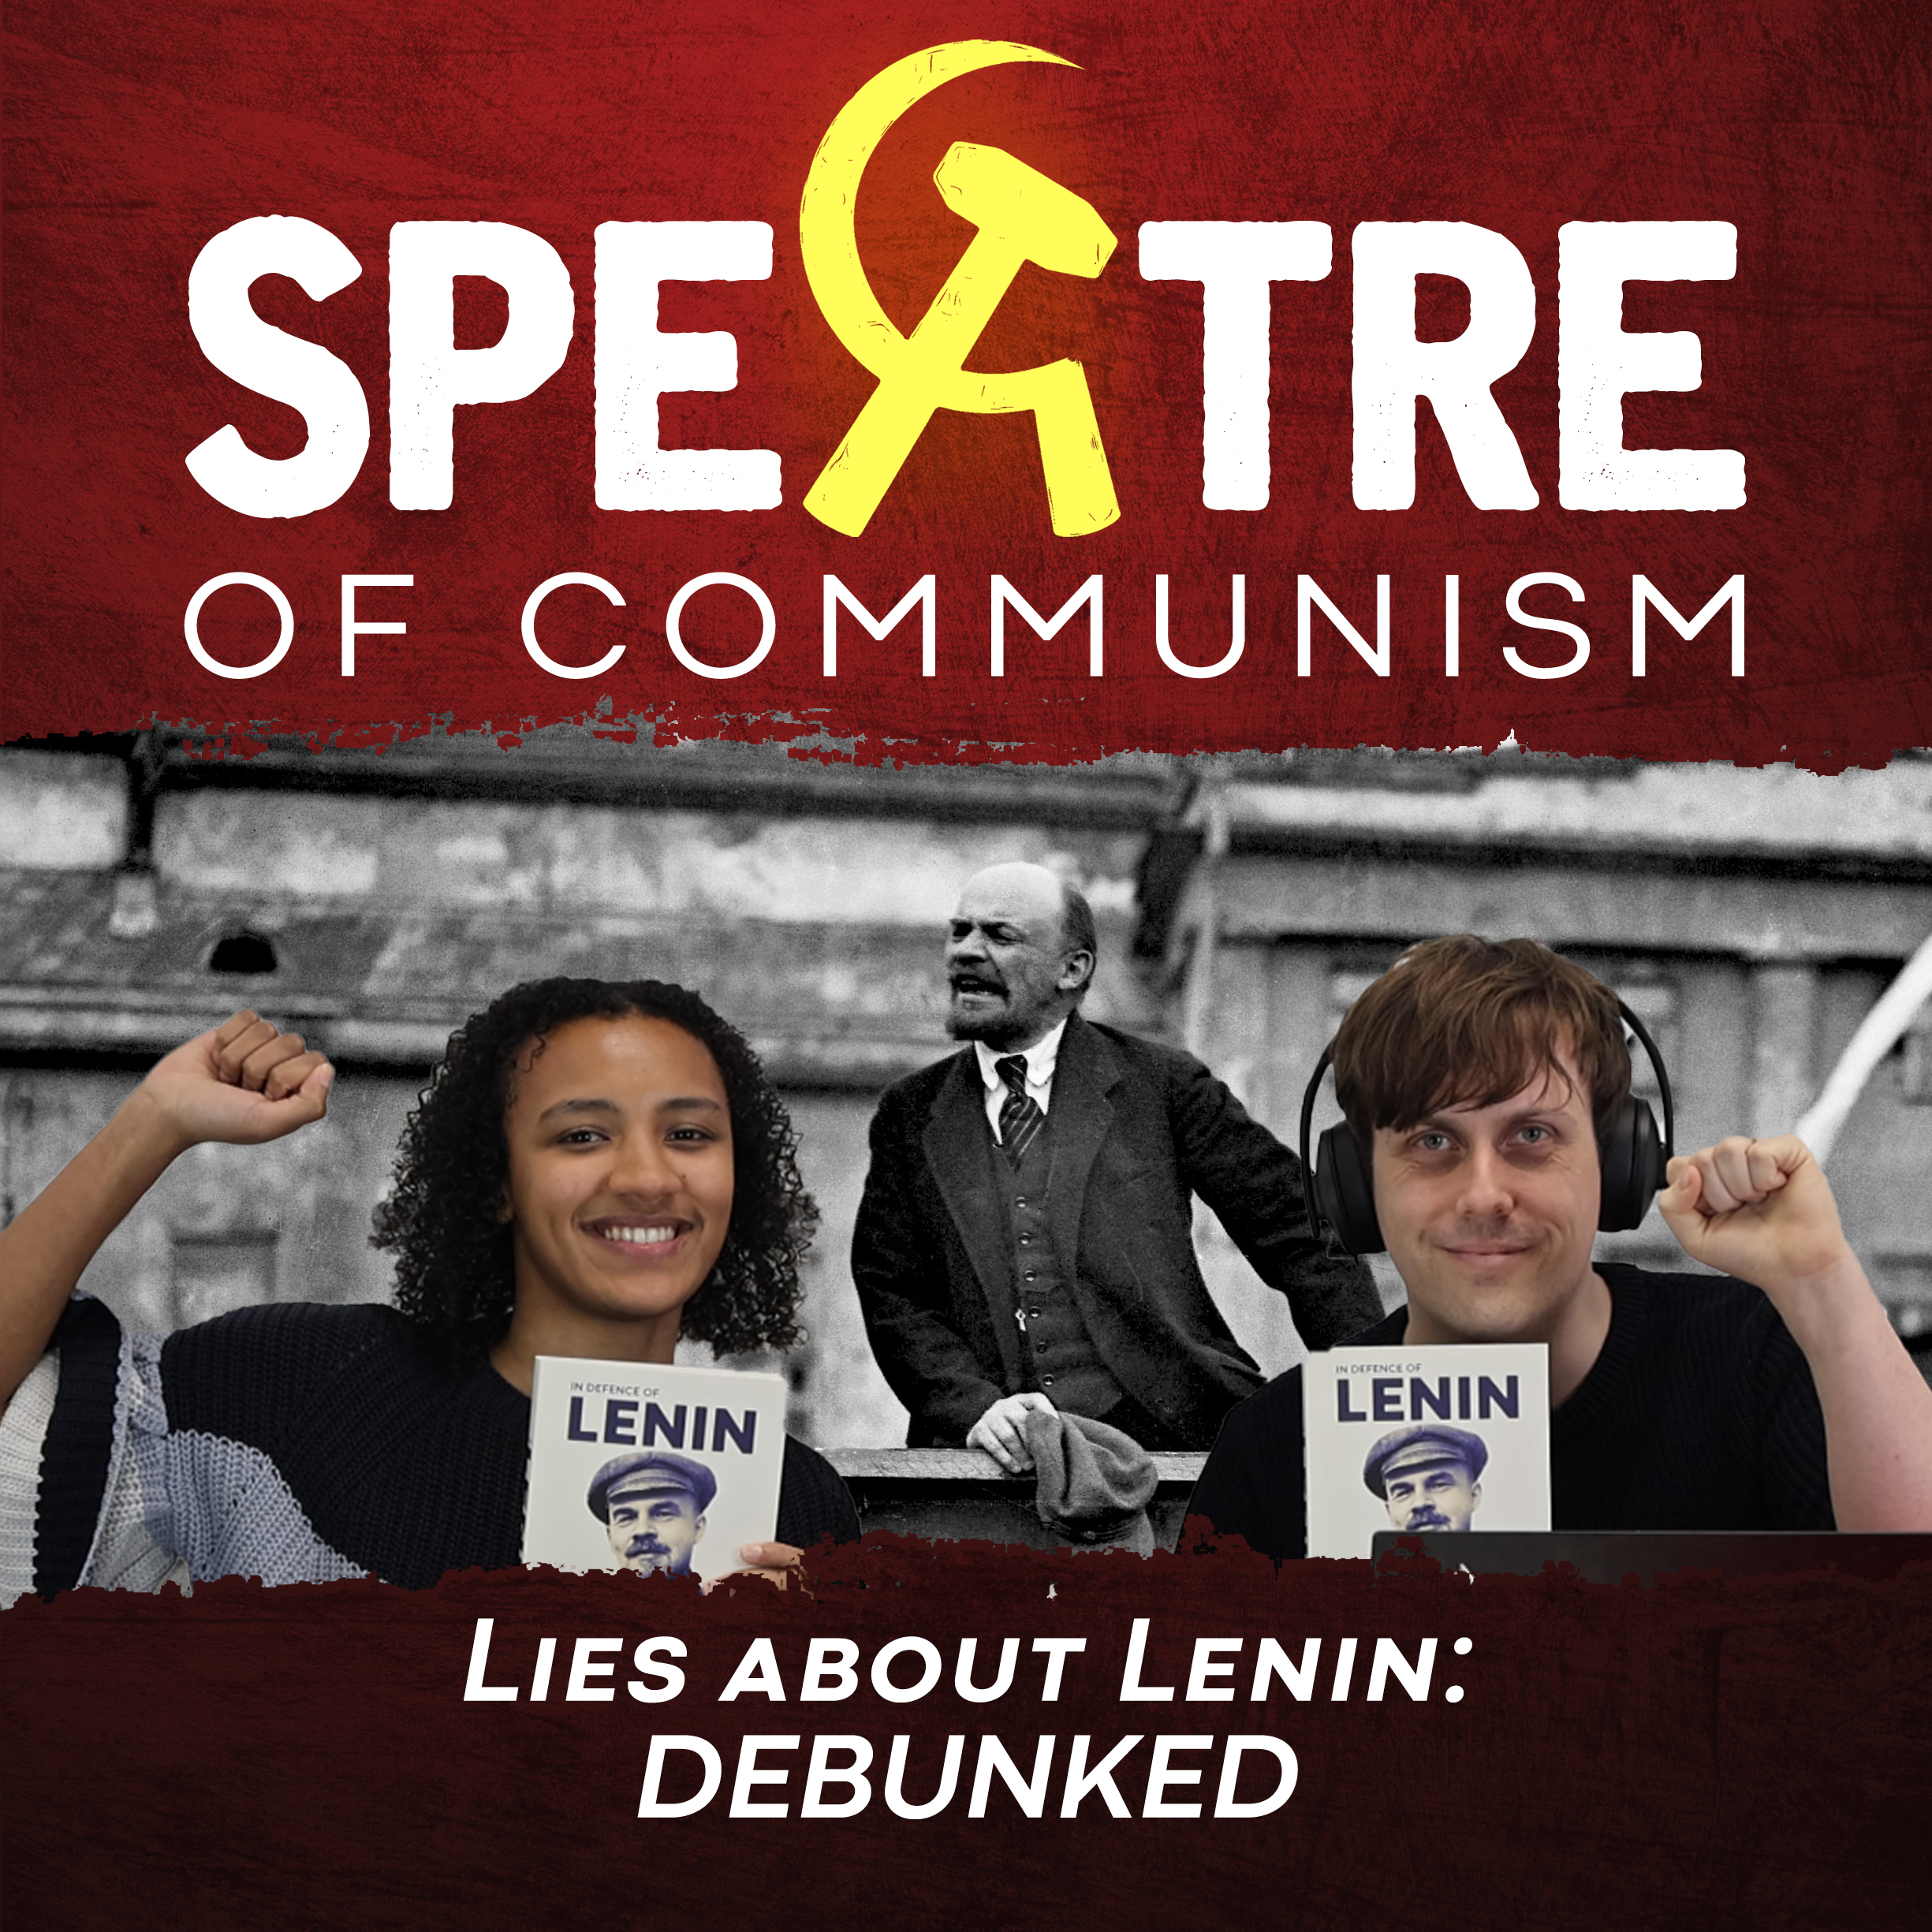 Lies about Lenin: DEBUNKED